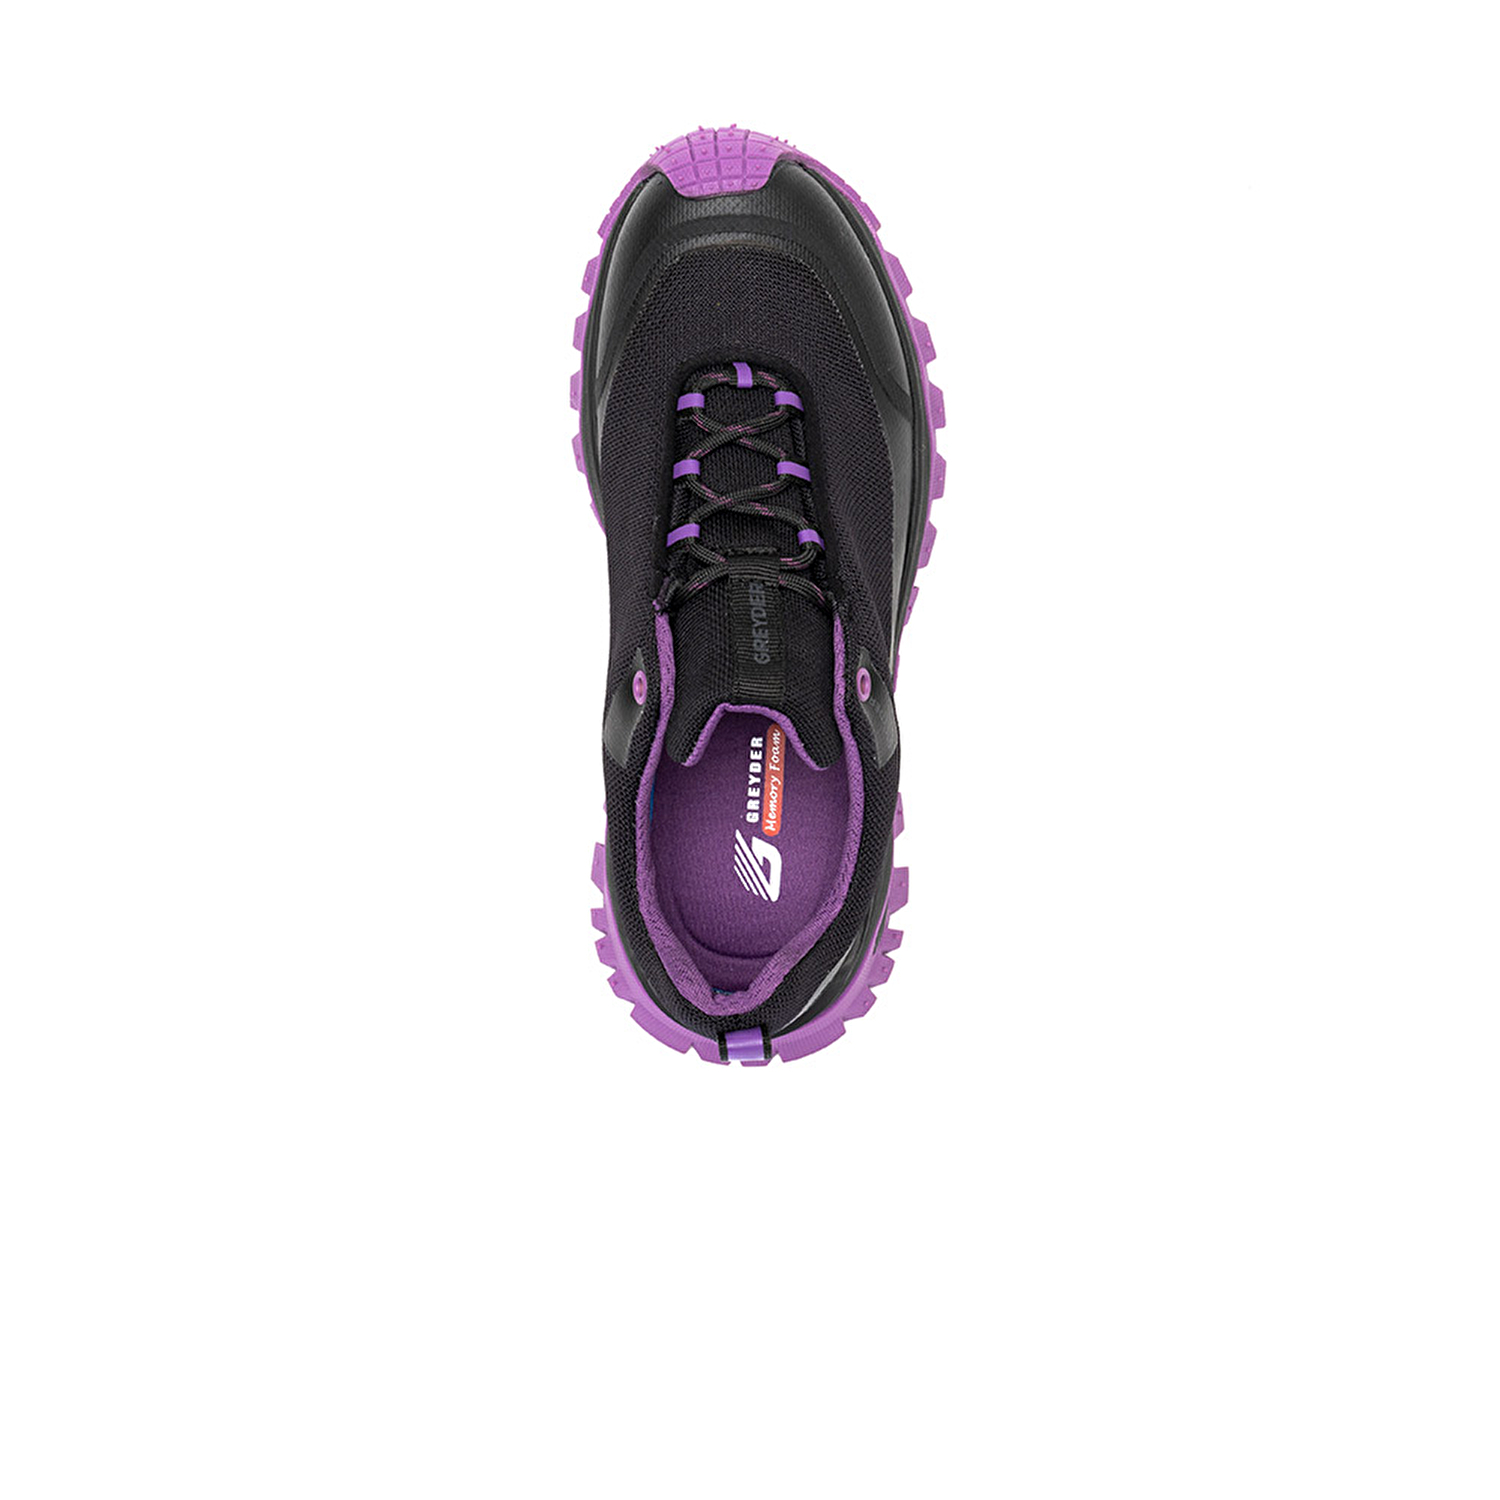 Kadın Siyah Mor Su Geçirmez Outdoor Ayakkabı 3K2GA16357-3